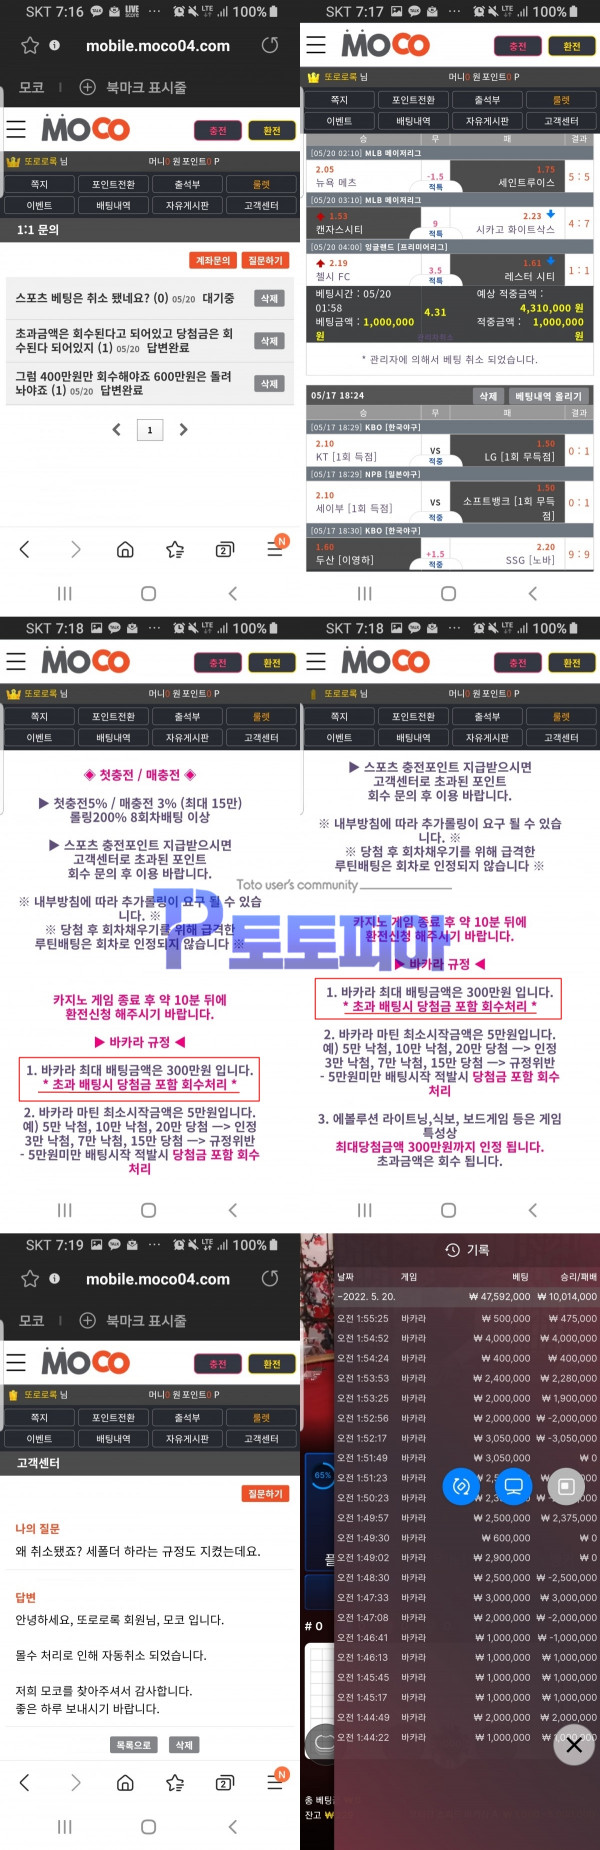 먹튀검증 모코[MOCO] (moco04.com) 먹튀확정 - 토토피아